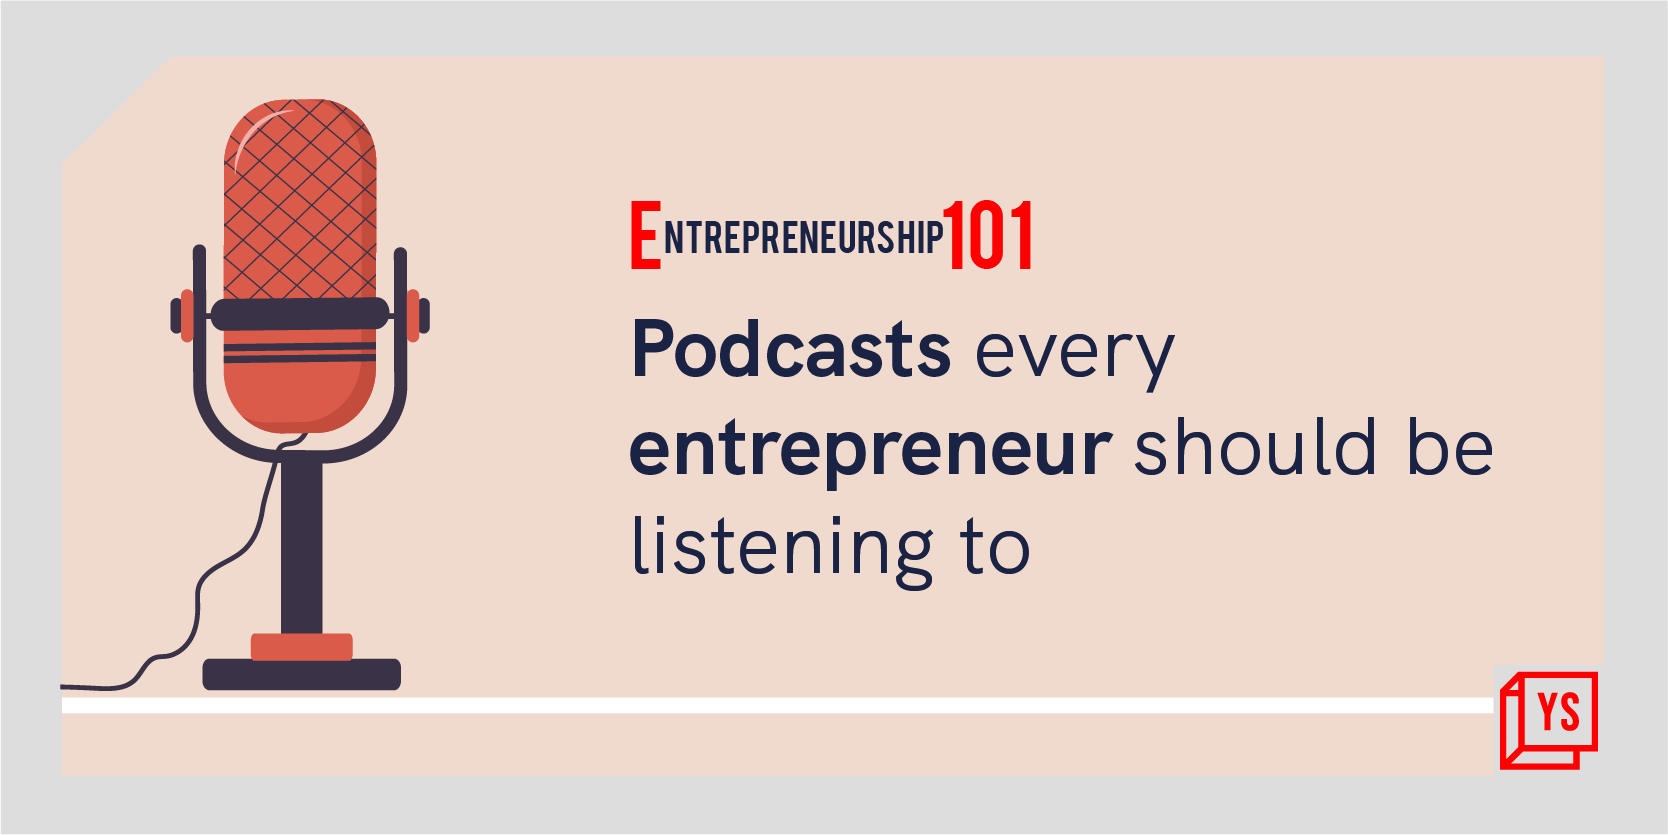 Entrepreneurship 101: Podcasts every entrepreneur should listen to